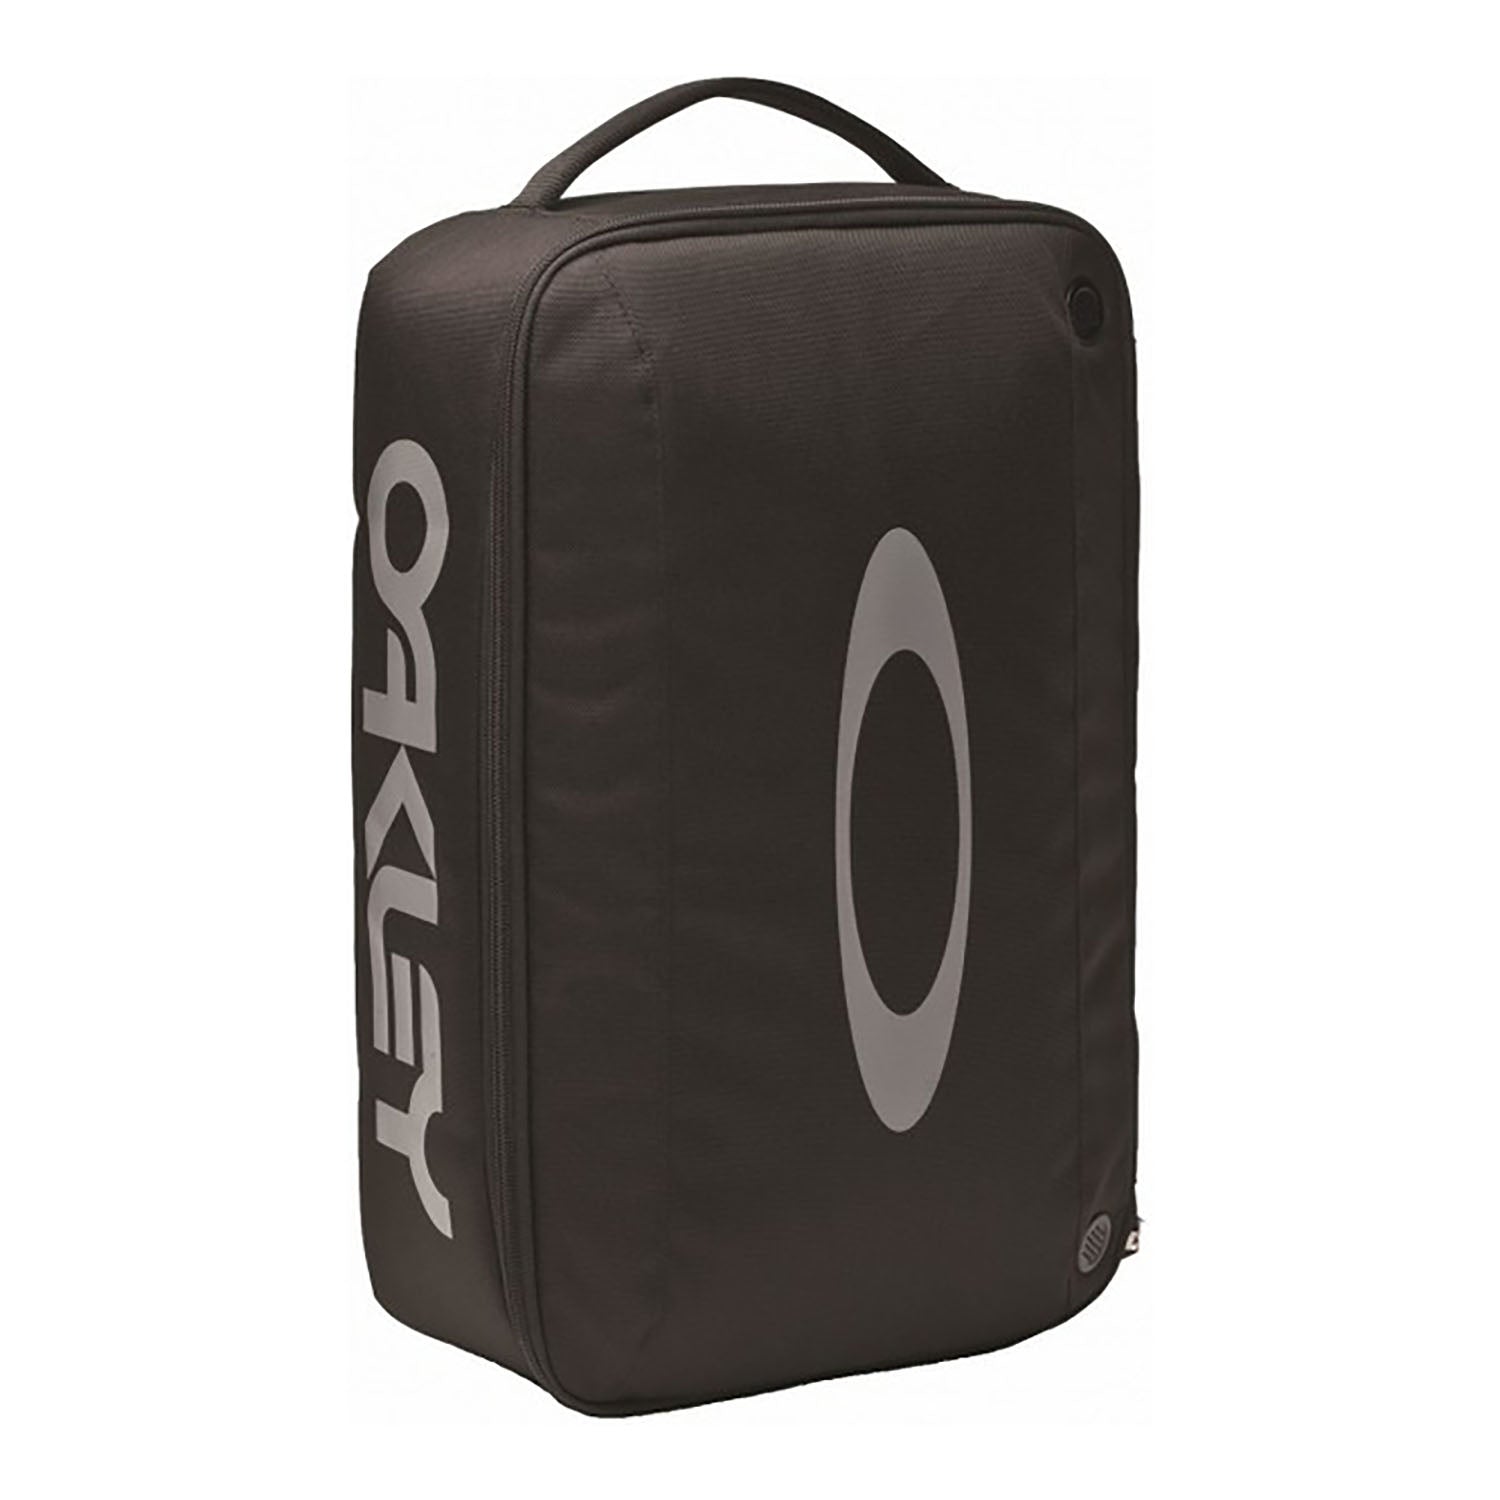 Oakley multi-unit goggle case in black color, showcasing the brand logo and sturdy zip closure